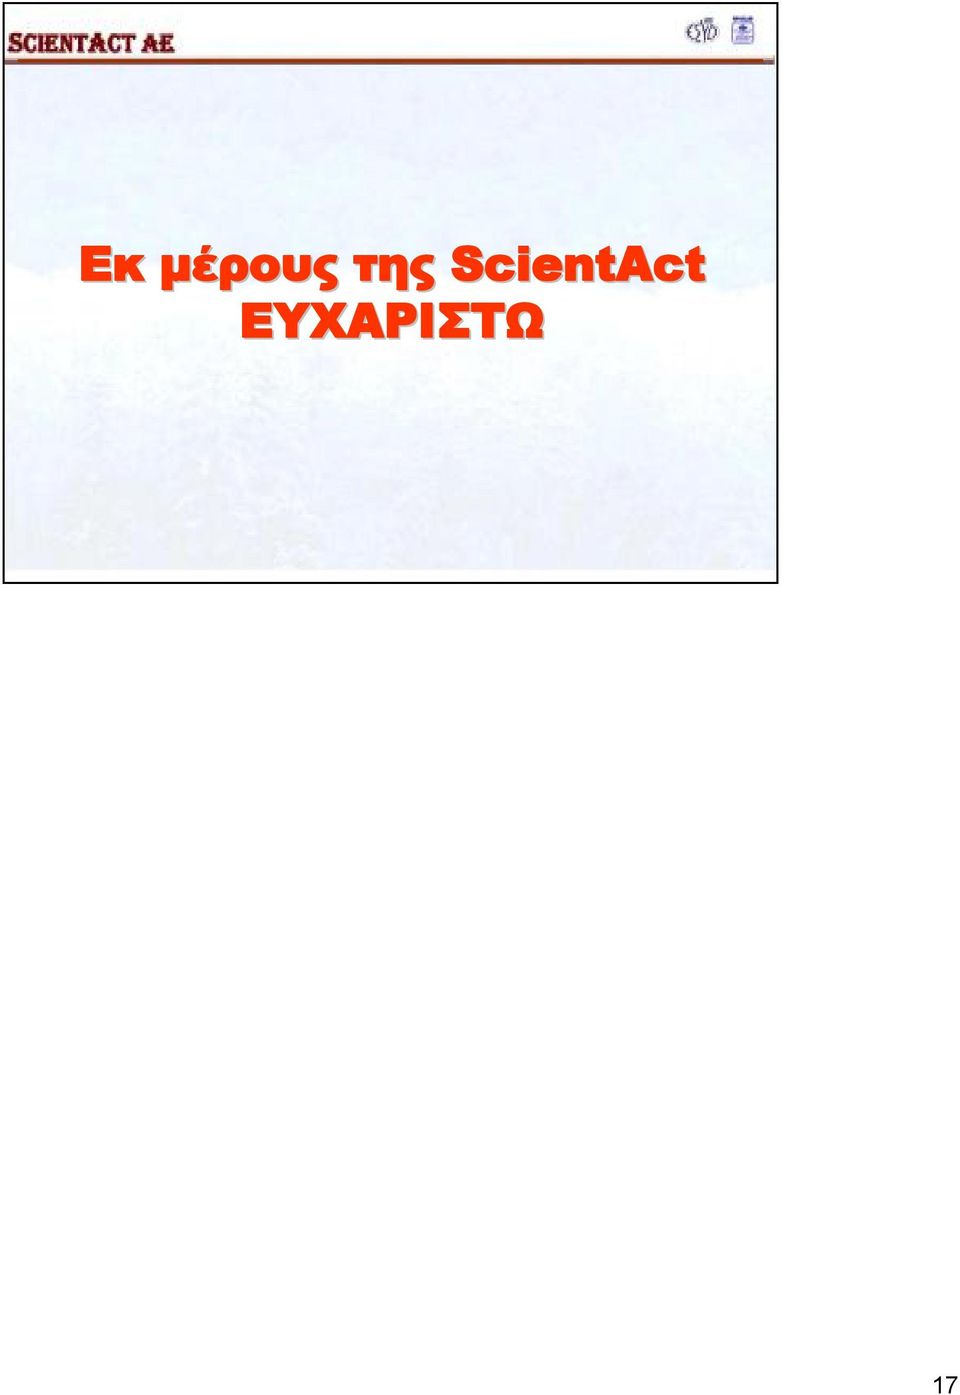 ScientAct